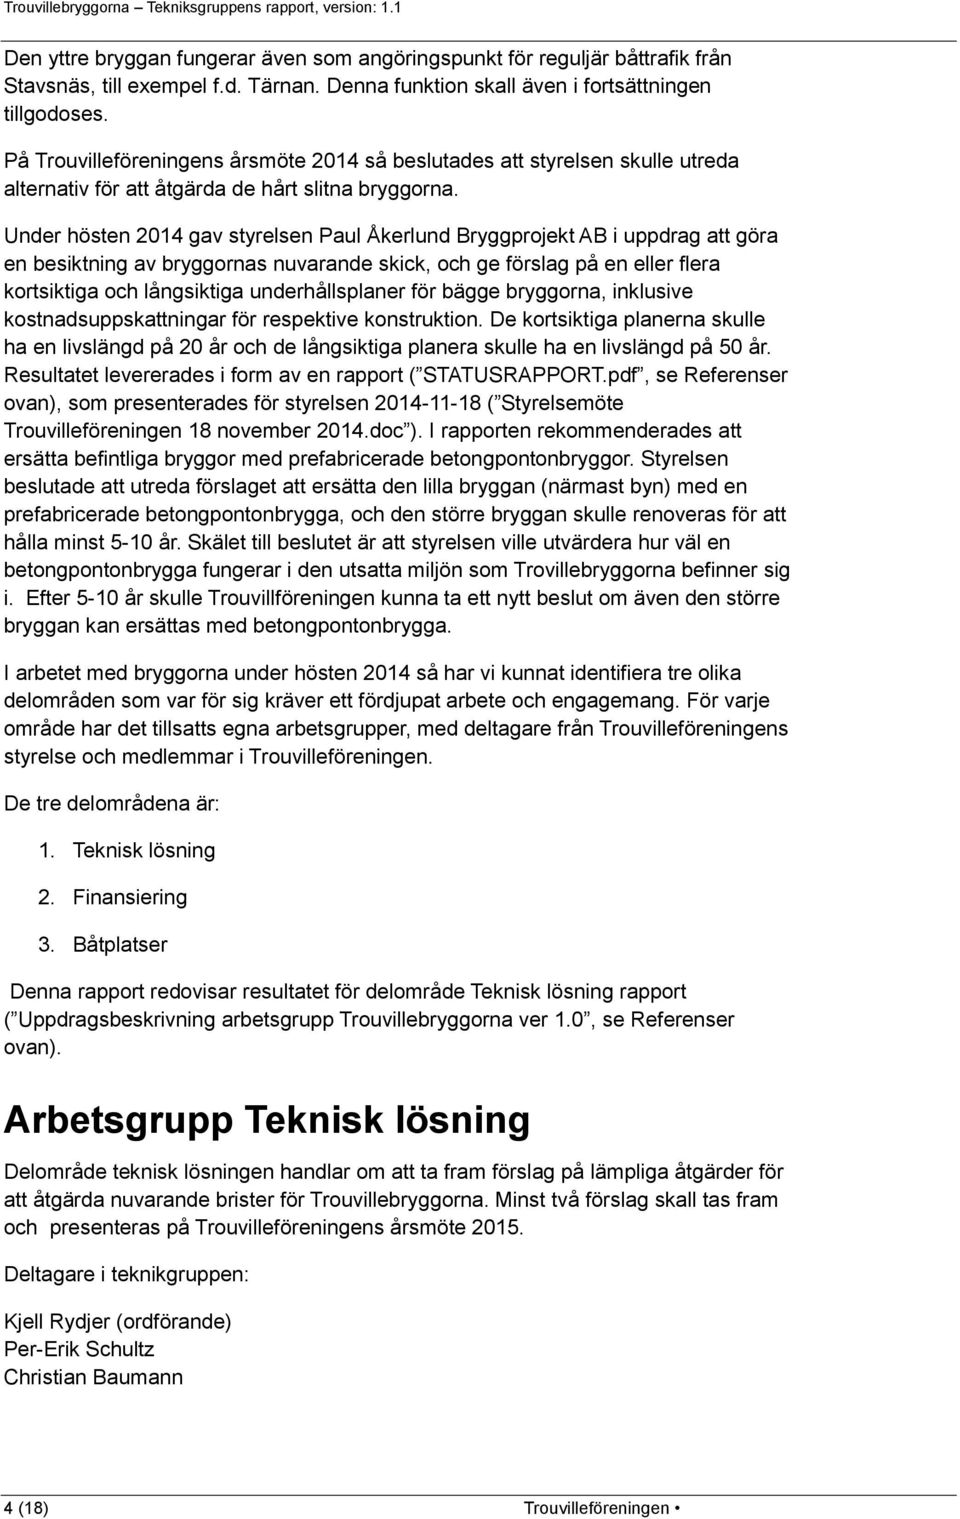 Under hösten 2014 gav styrelsen Paul Åkerlund Bryggprojekt AB i uppdrag att göra en besiktning av bryggornas nuvarande skick, och ge förslag på en eller flera kortsiktiga och långsiktiga